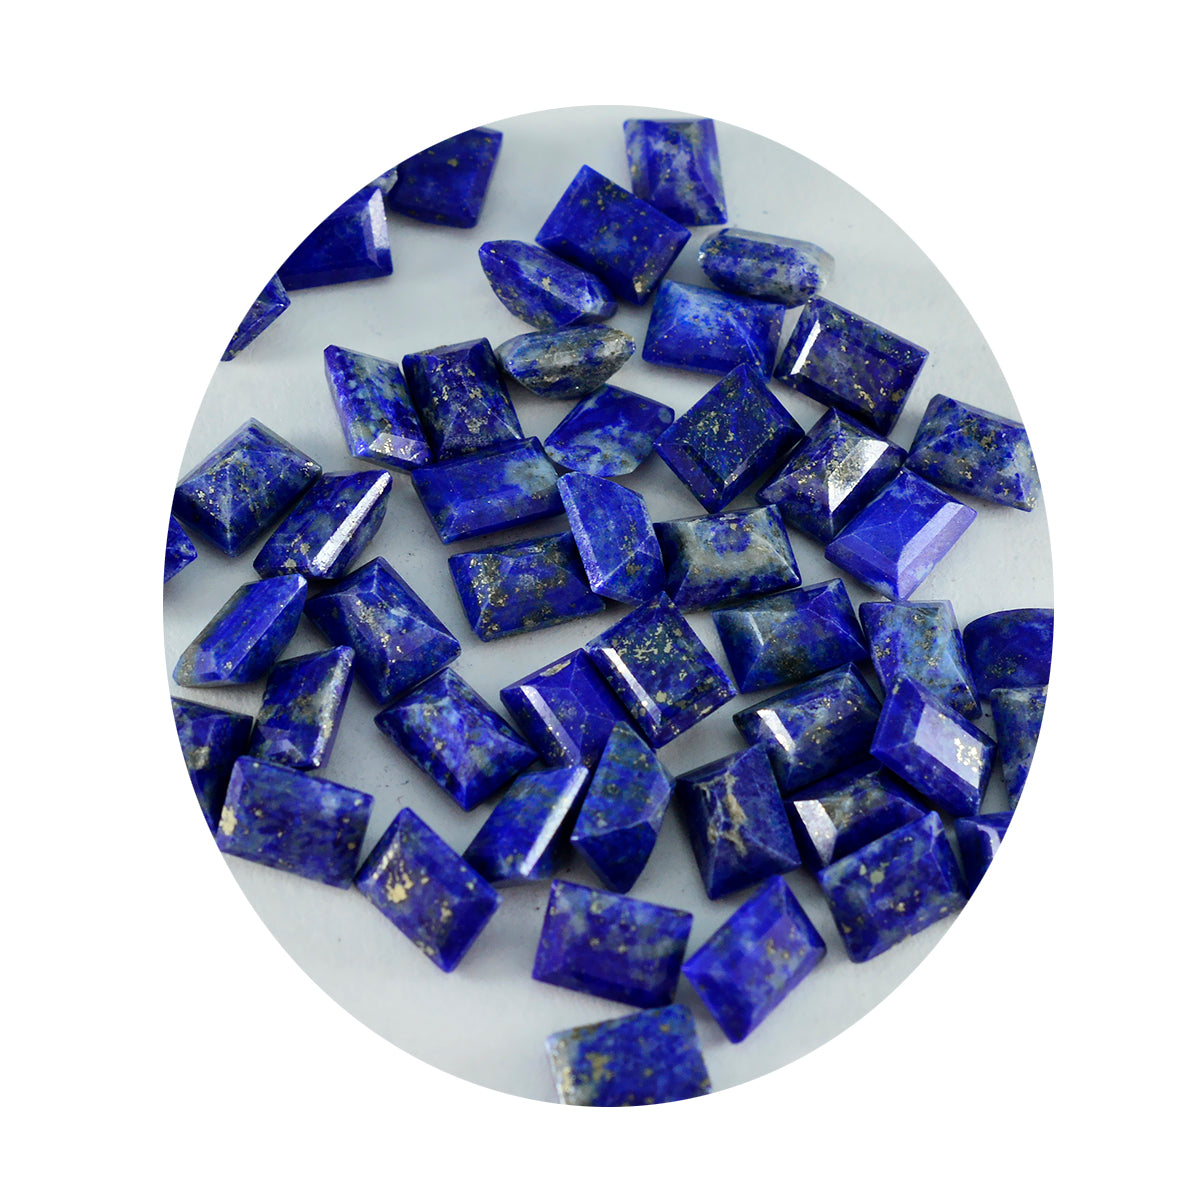 riyogems 1 шт. натуральный синий лазурит ограненный 3x5 мм восьмиугольной формы, хорошее качество, драгоценный камень